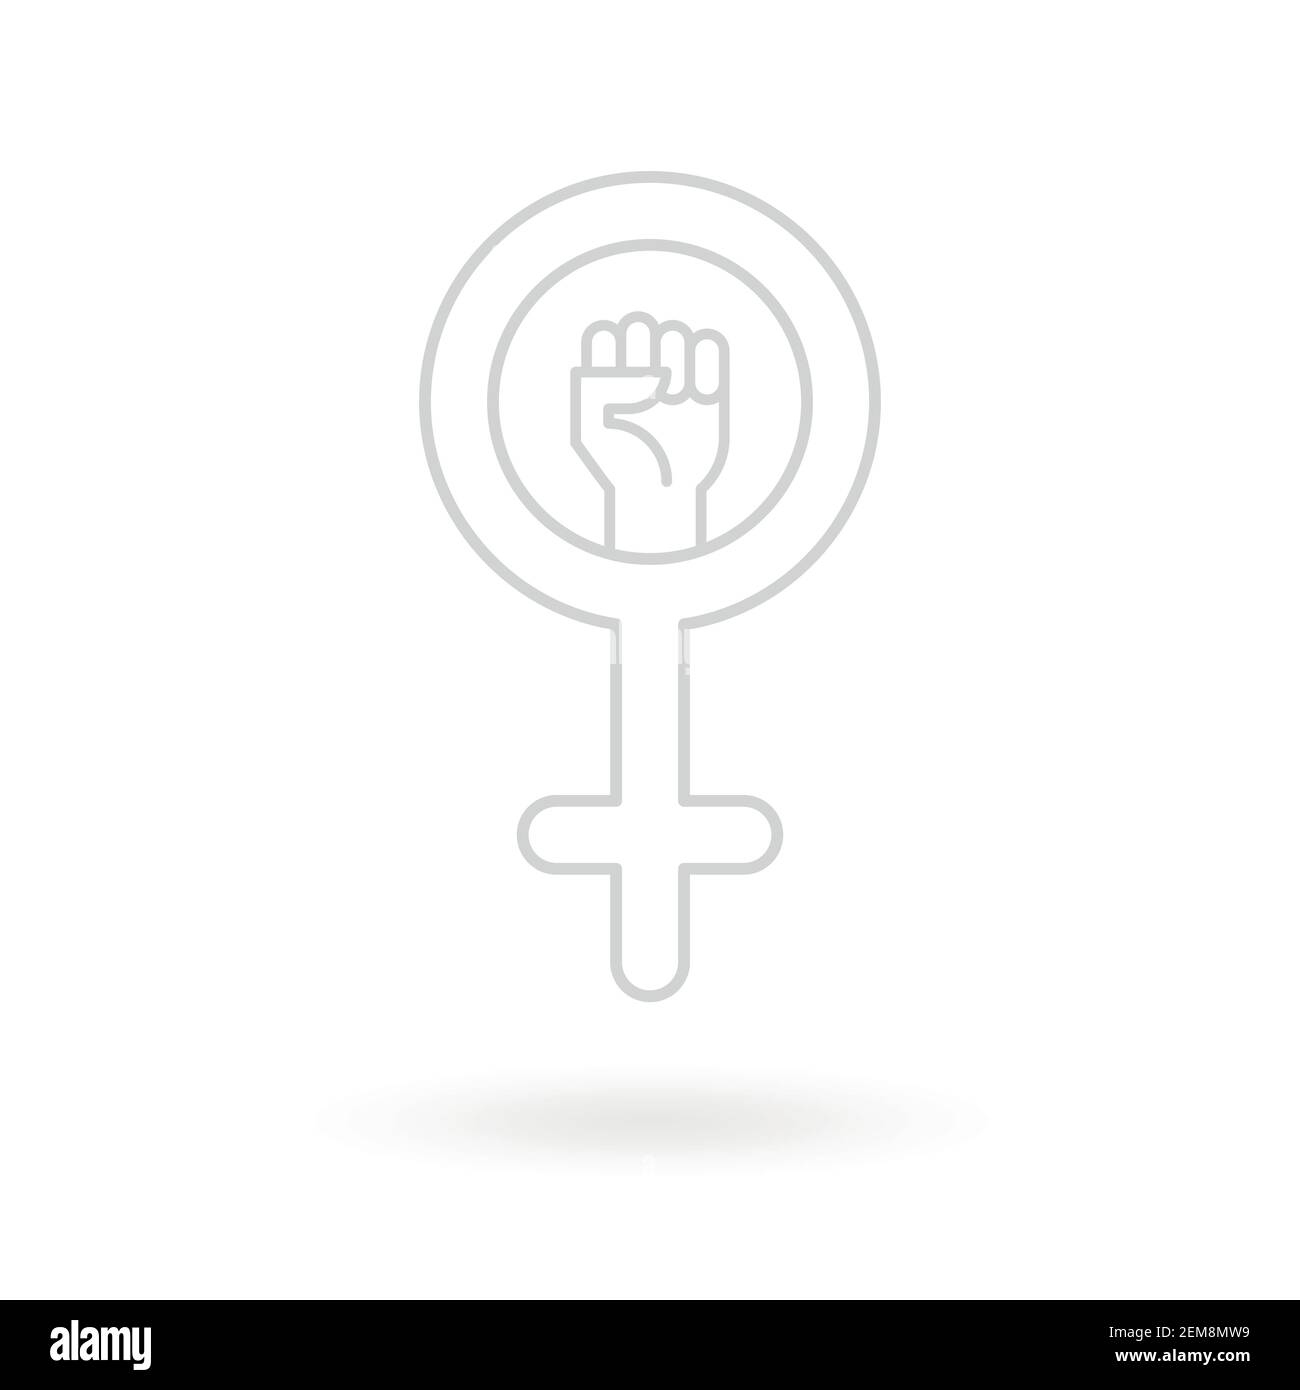 Feminismus-Ikone. Weibliches Geschlecht Symbol mit erhobener Faust. Flaches und minimalistisches Design. Vektorgrafik Stock Vektor